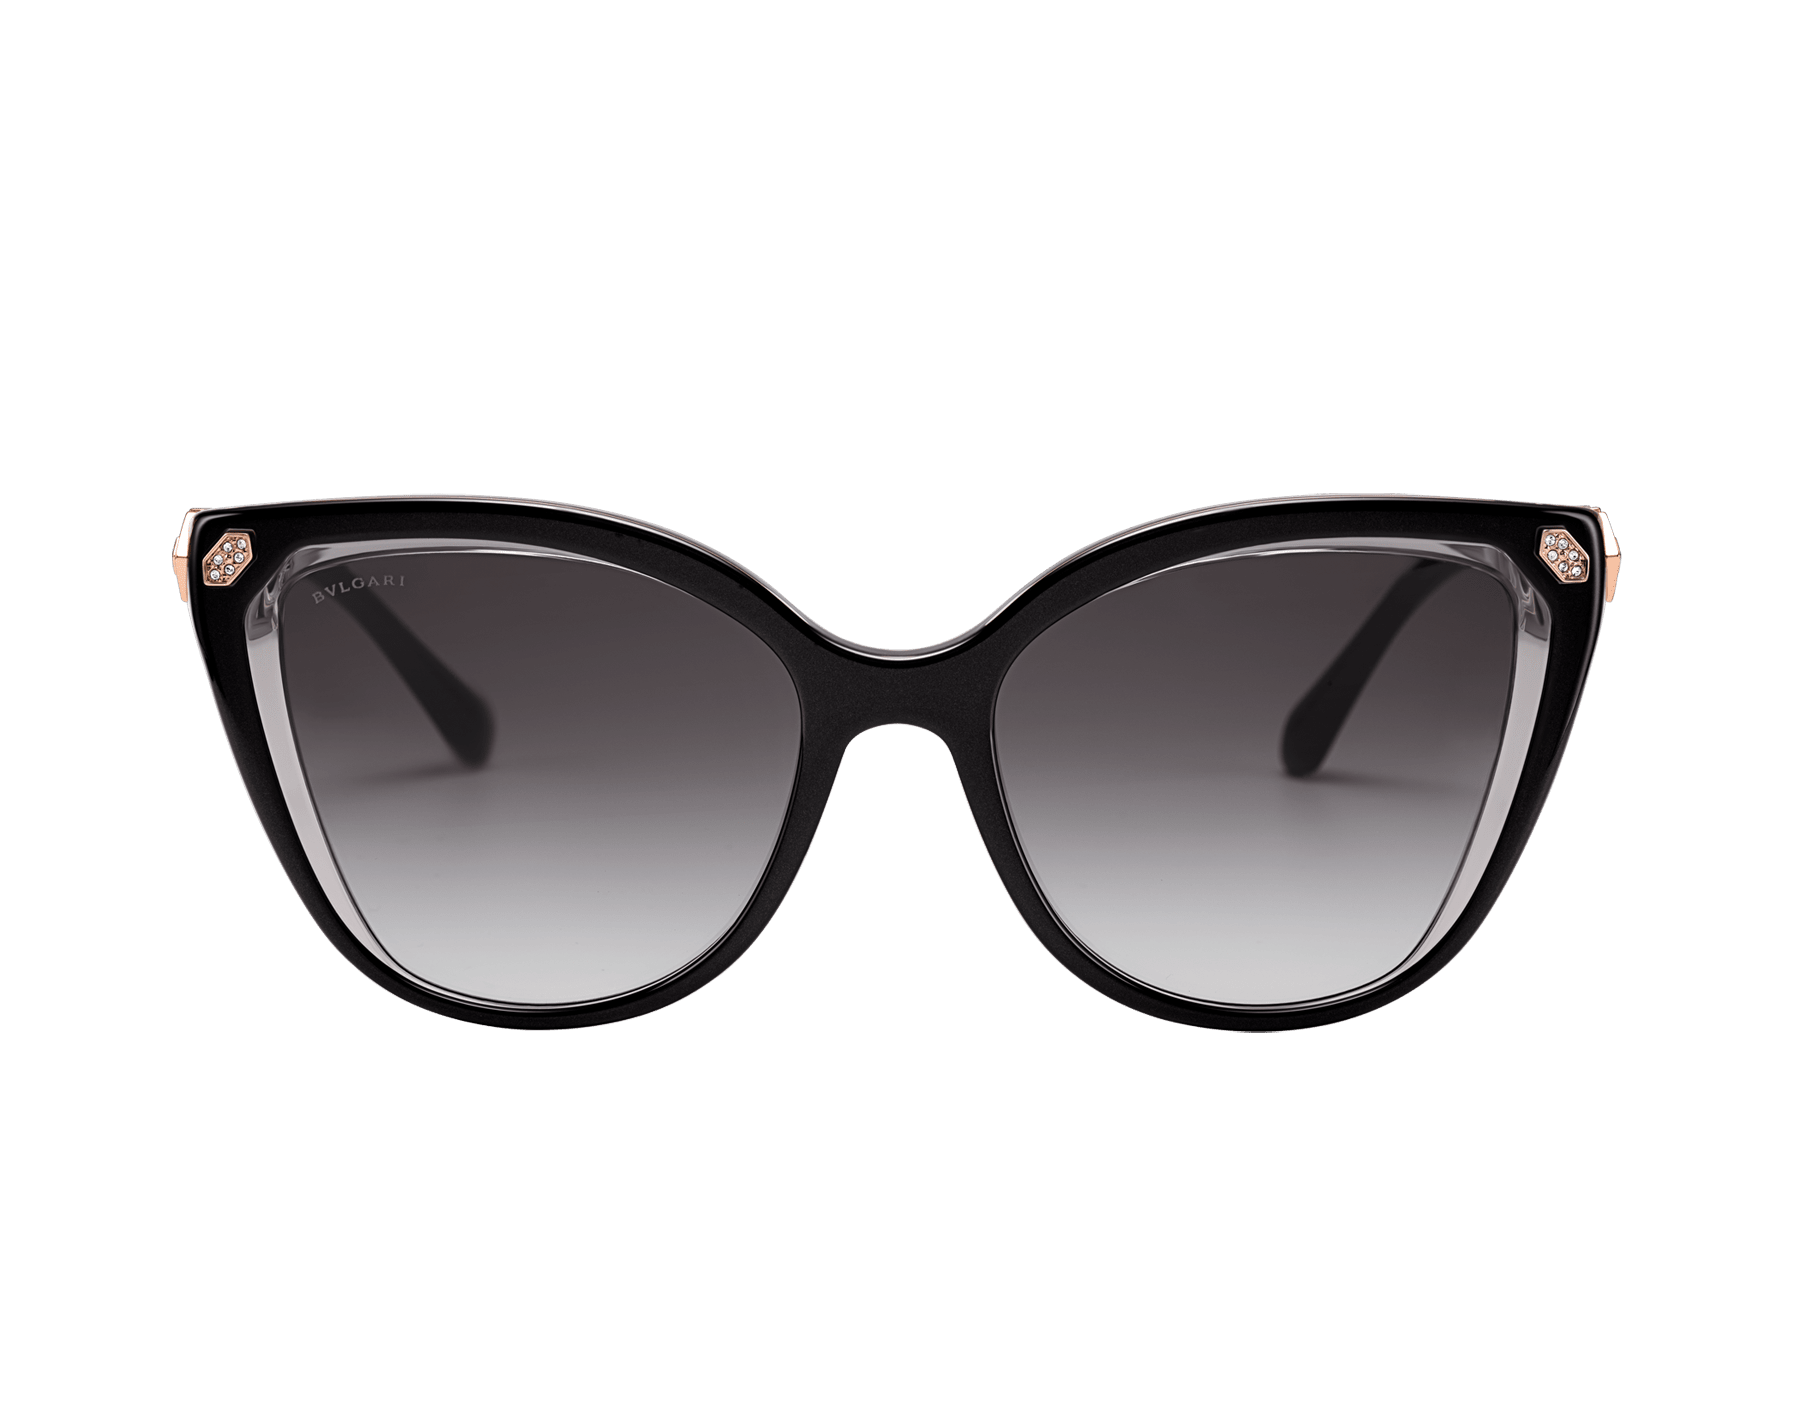 bvlgari black and white sunglasses